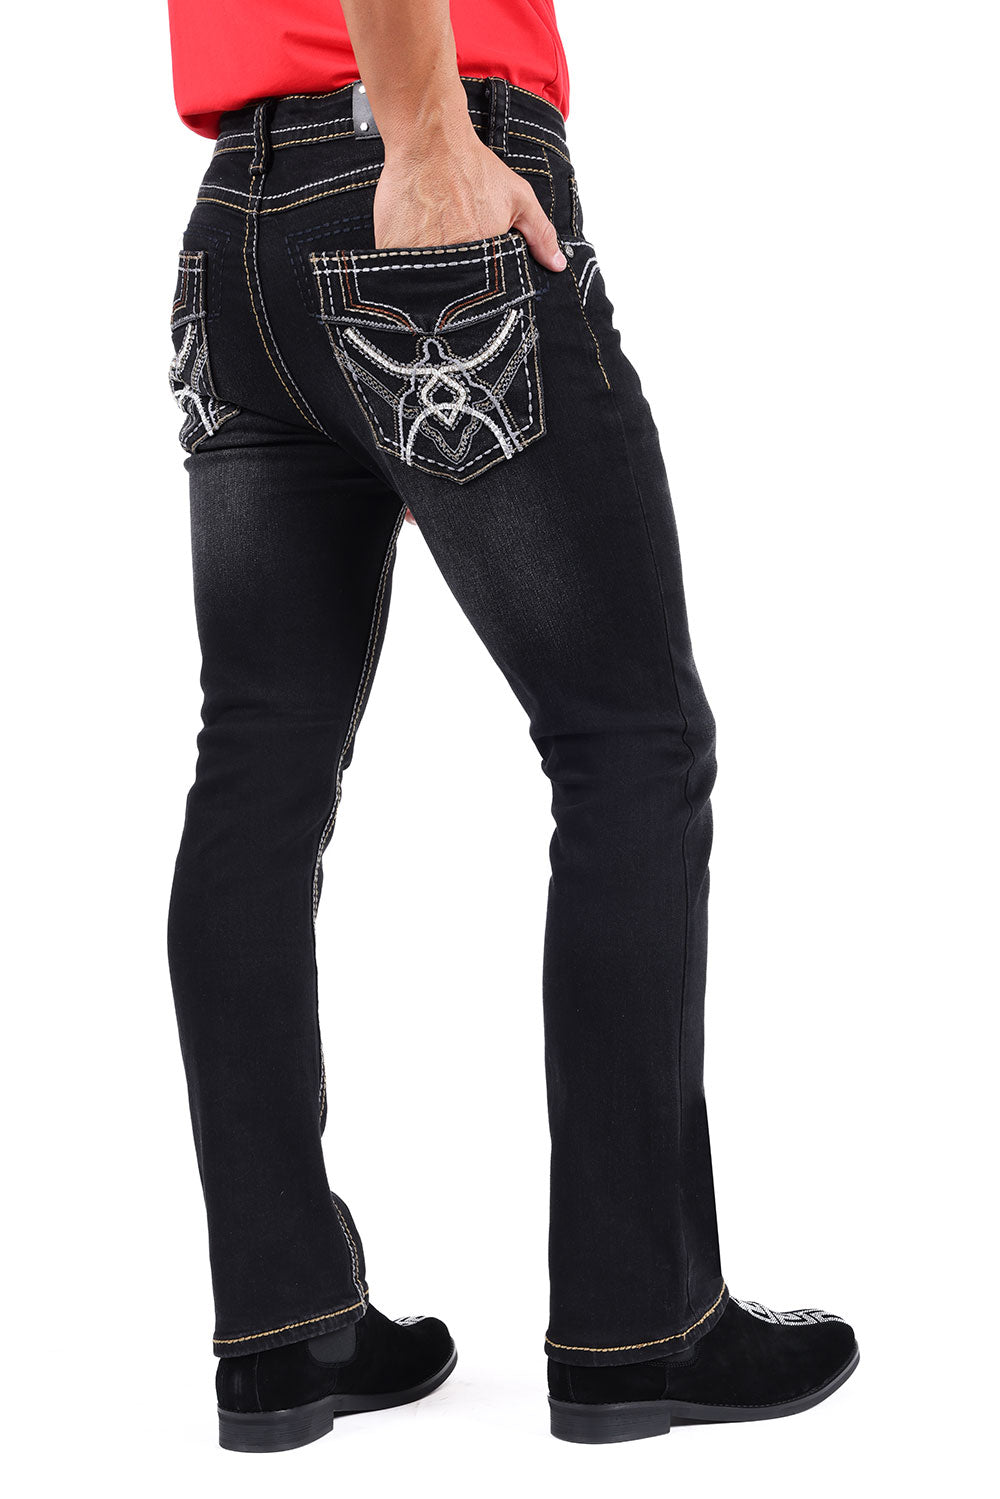 Barabas Black Cowboy Western Denim Jeans - Dudes Boutique